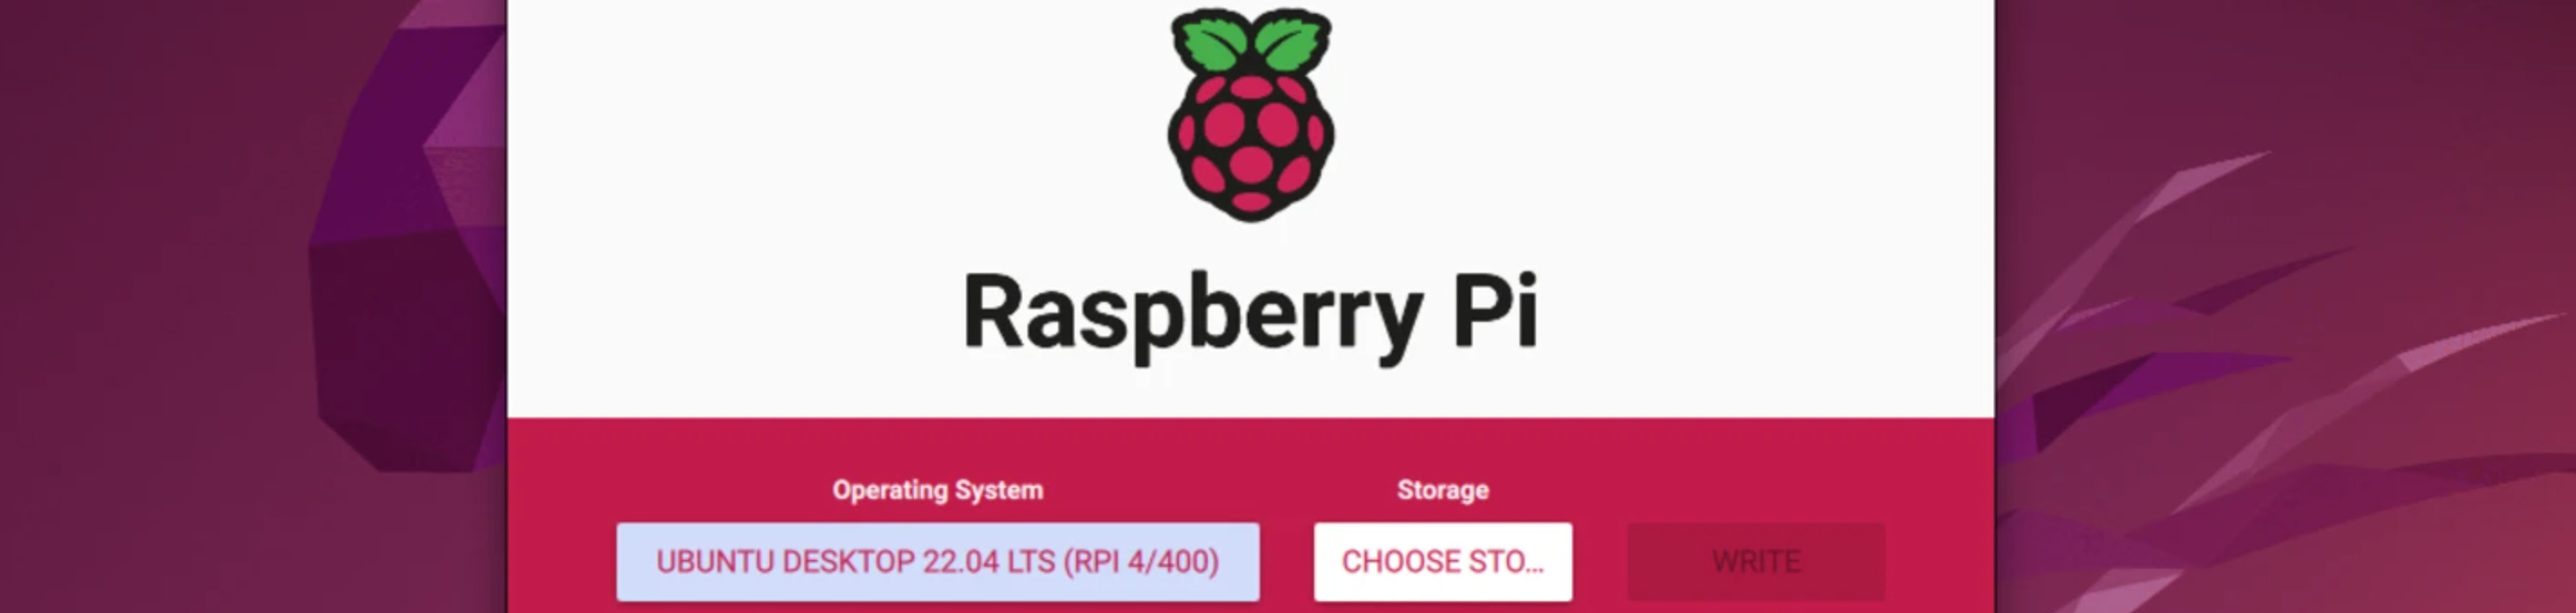 Ubuntu Raspberry Pi Image for 22.04